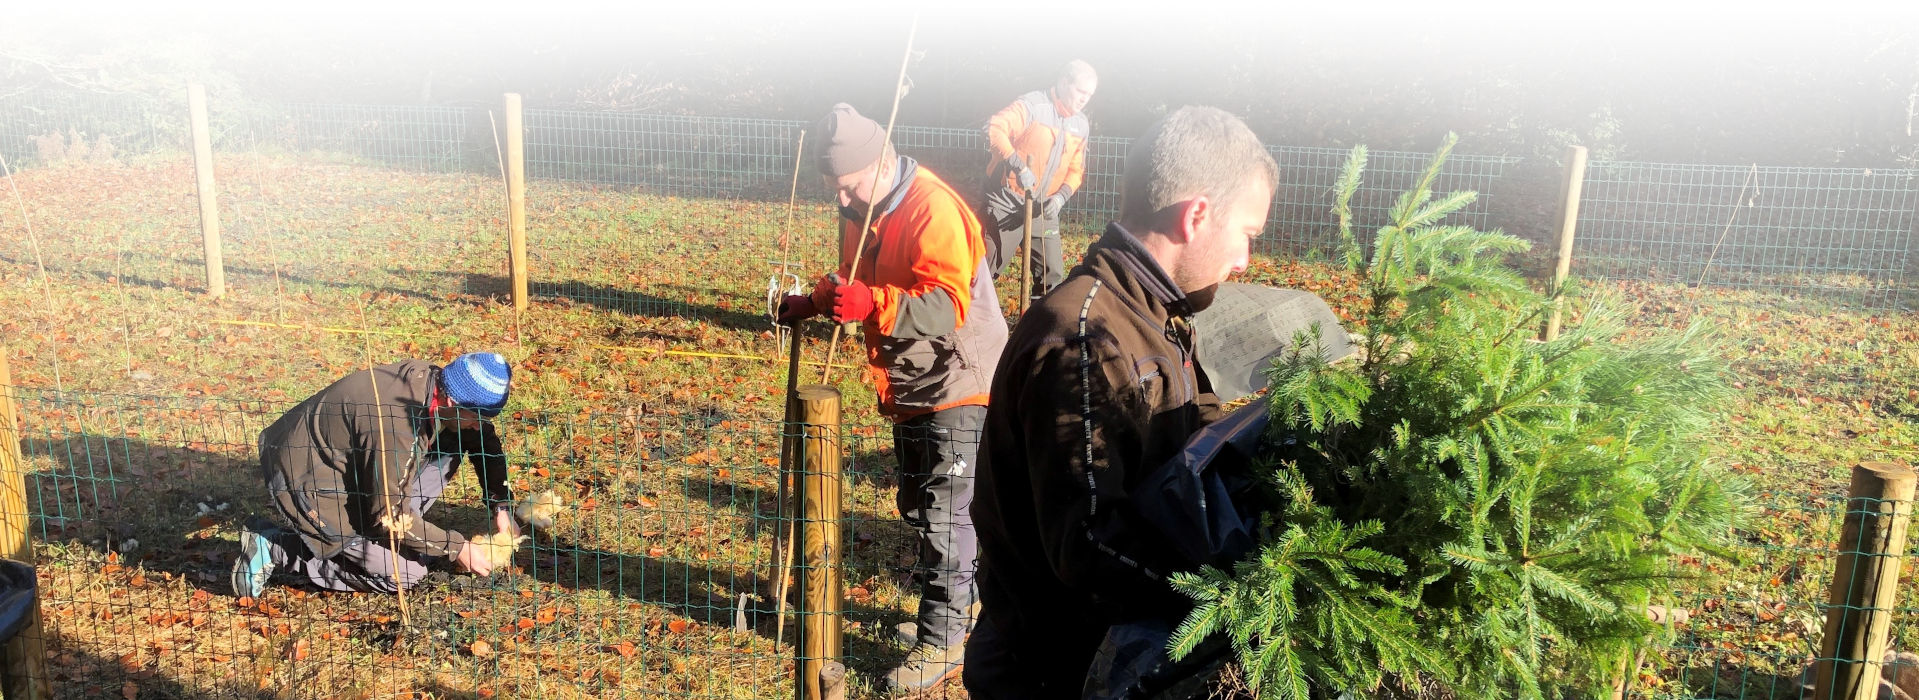 Vier Männer in Arbeitskleidung knien oder stehen in einem Wiesengrundstück und setzen junge Baumpflänzchen.